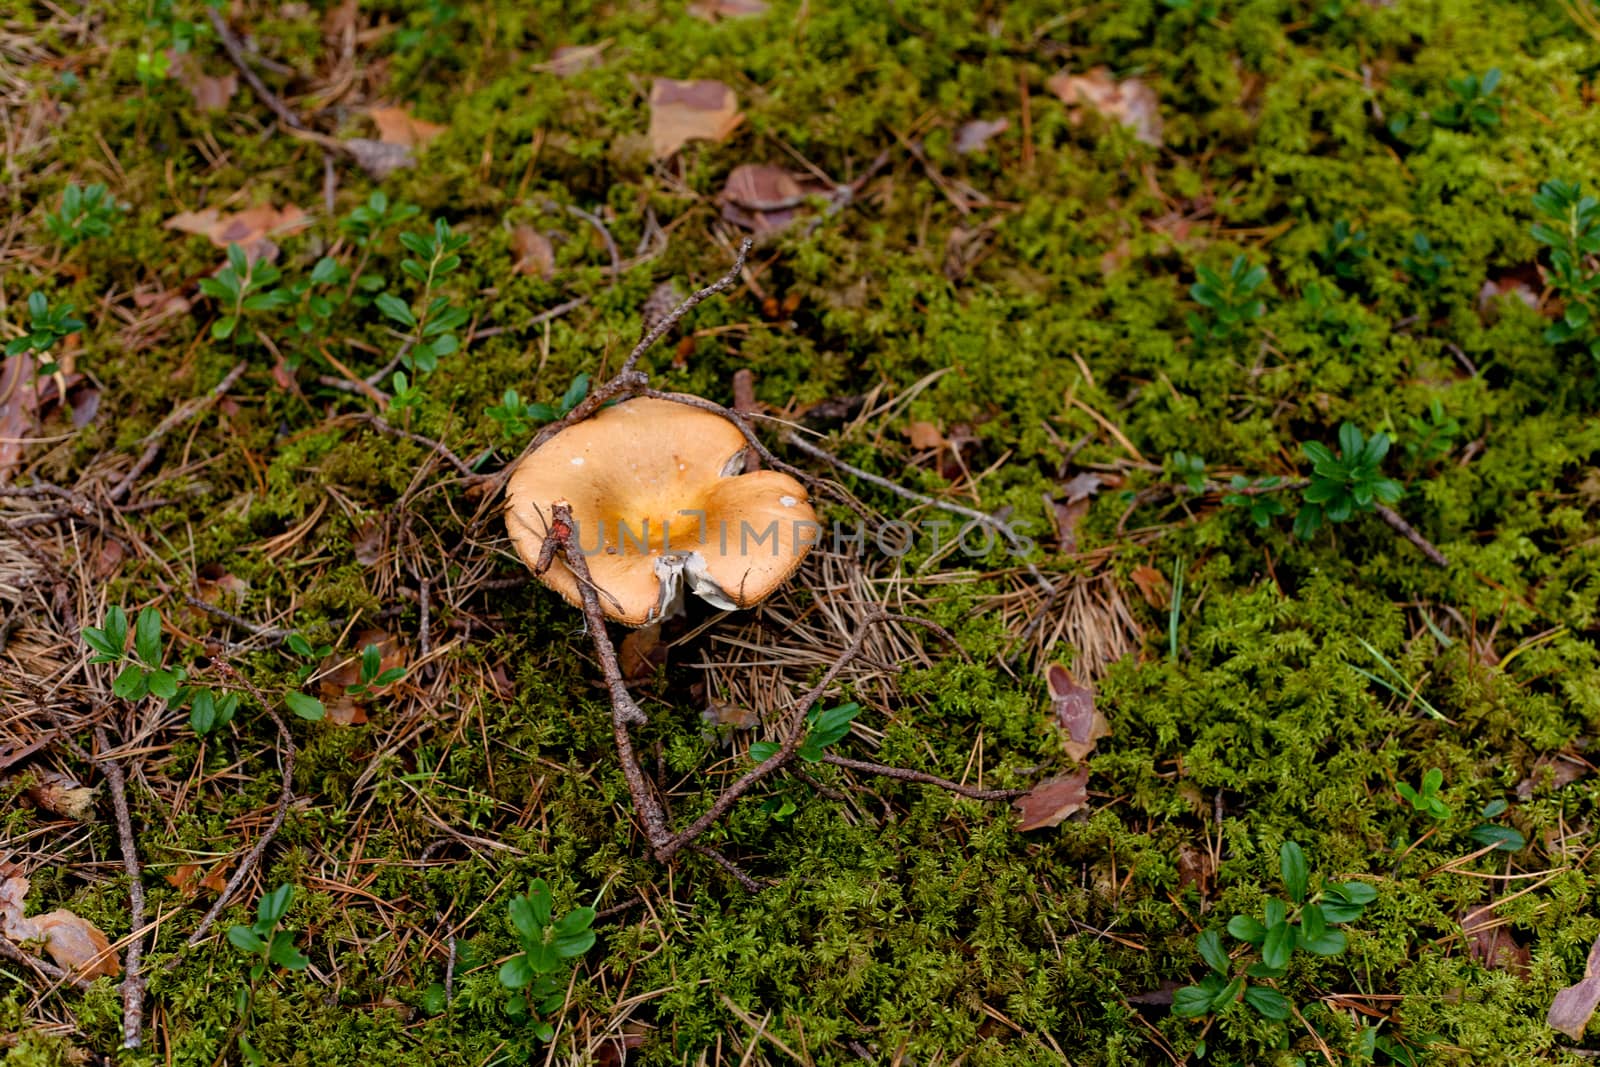  yellow mushroom by foaloce